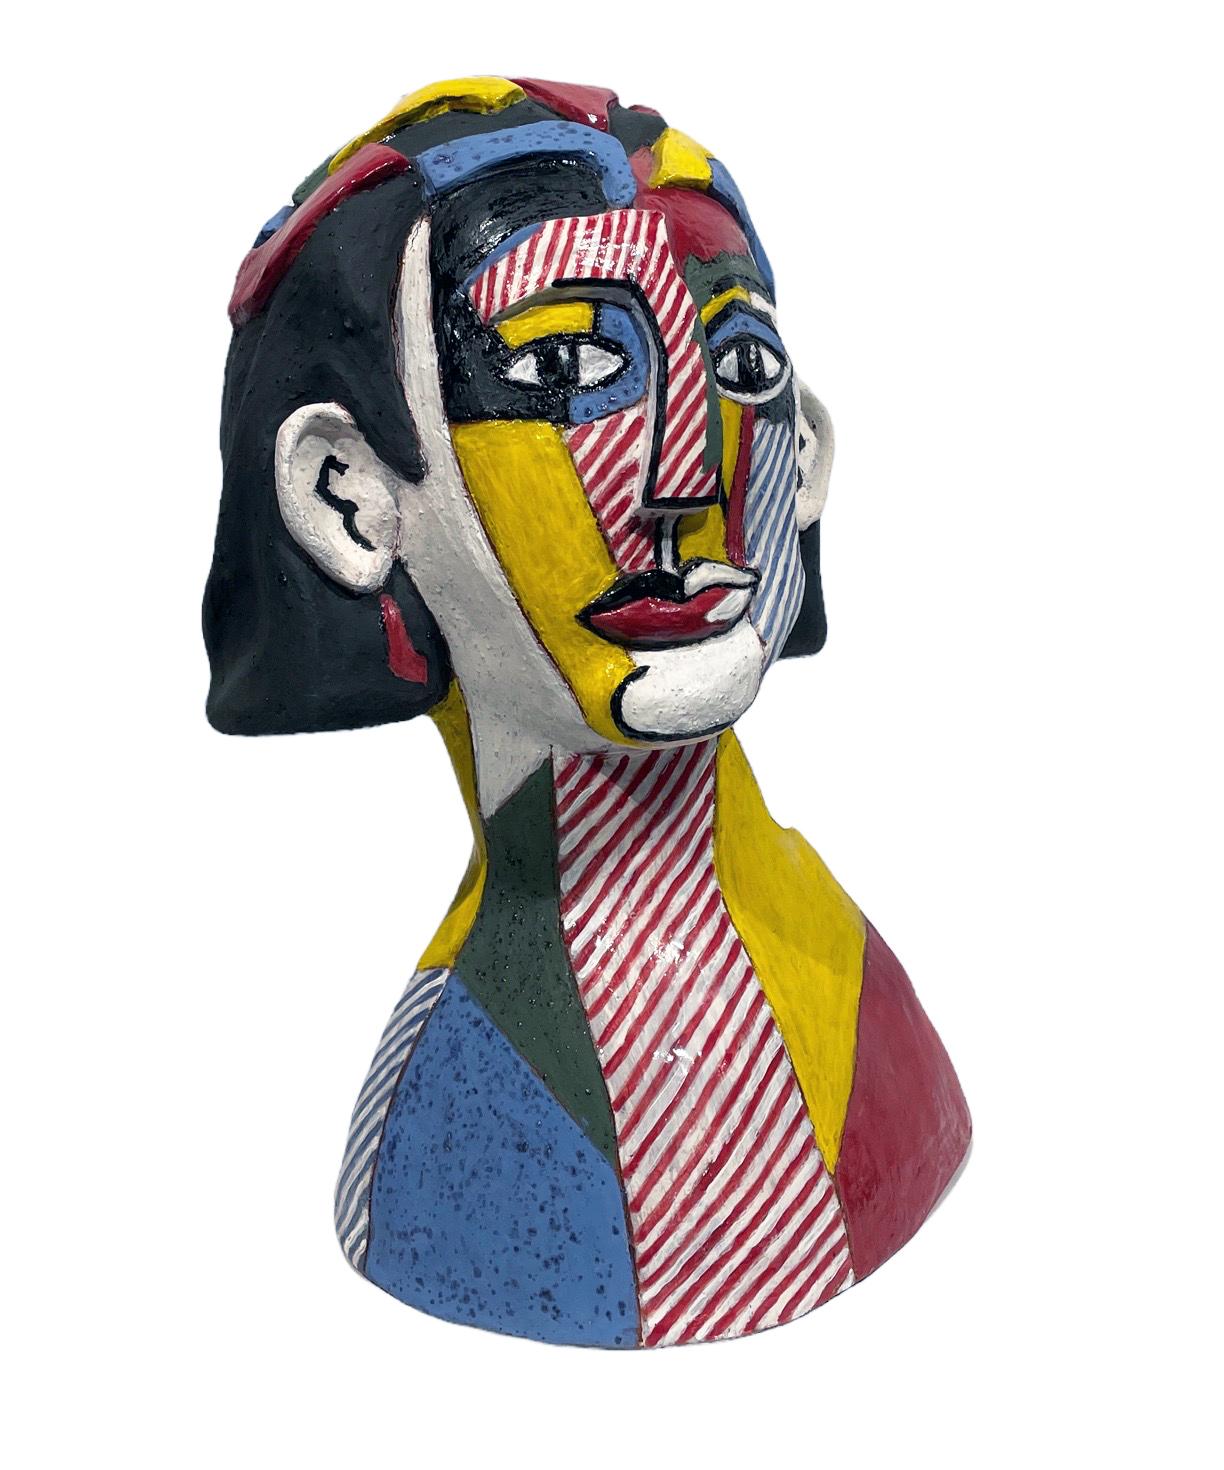 Lichtenstein's Portrait of a Woman - Ode to Roy Lichtenstein, Hand Built Ceramic - Sculpture by Sandy Kaplan